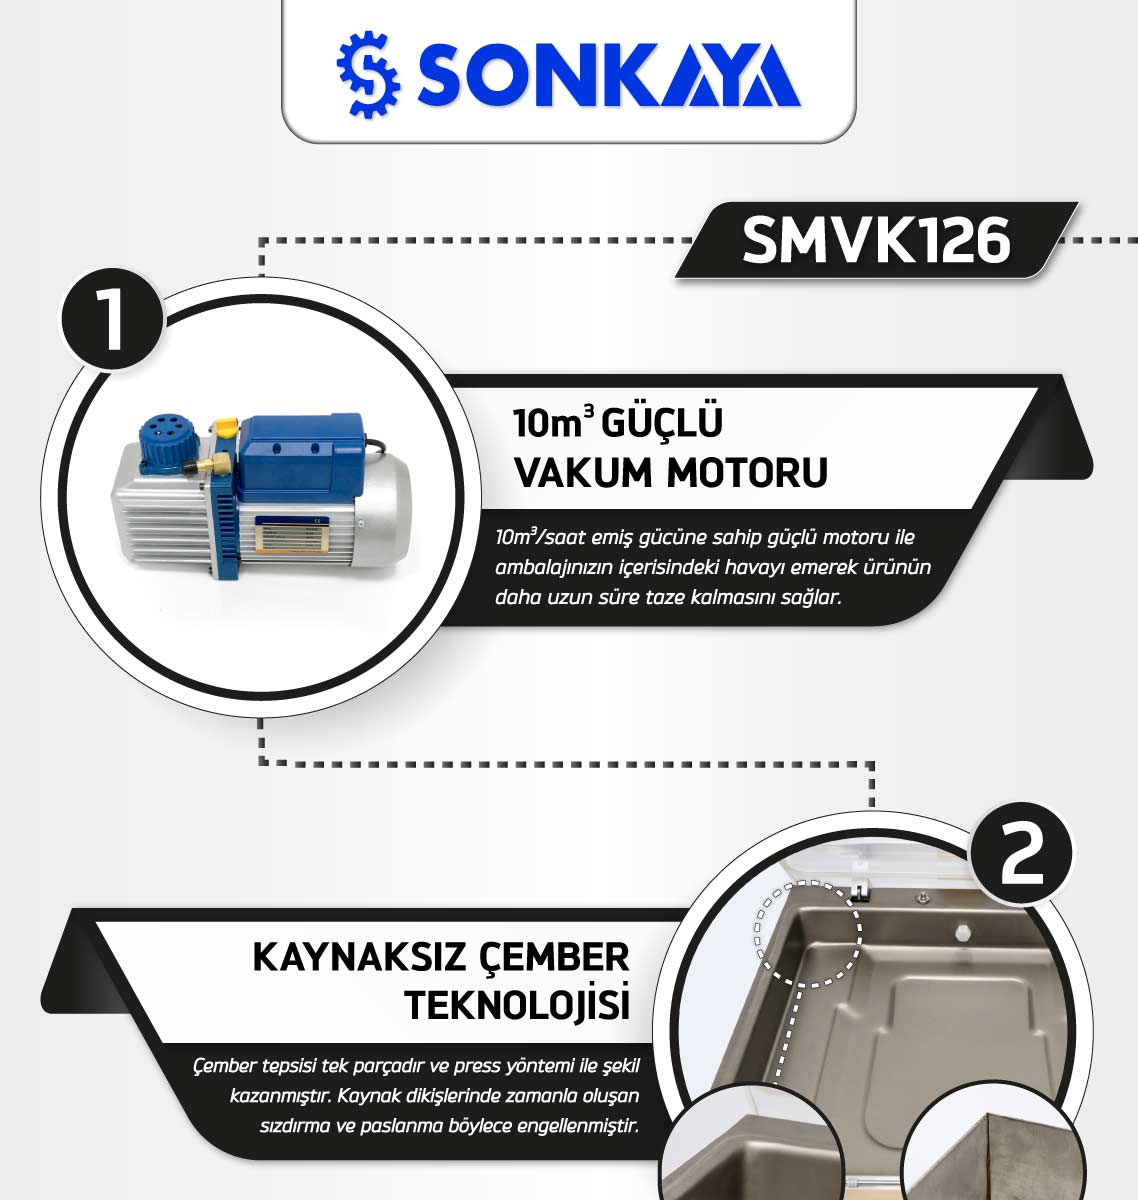 Sonkaya SMVK126 Vakum Paketleme Makinası Özellikleri - 1